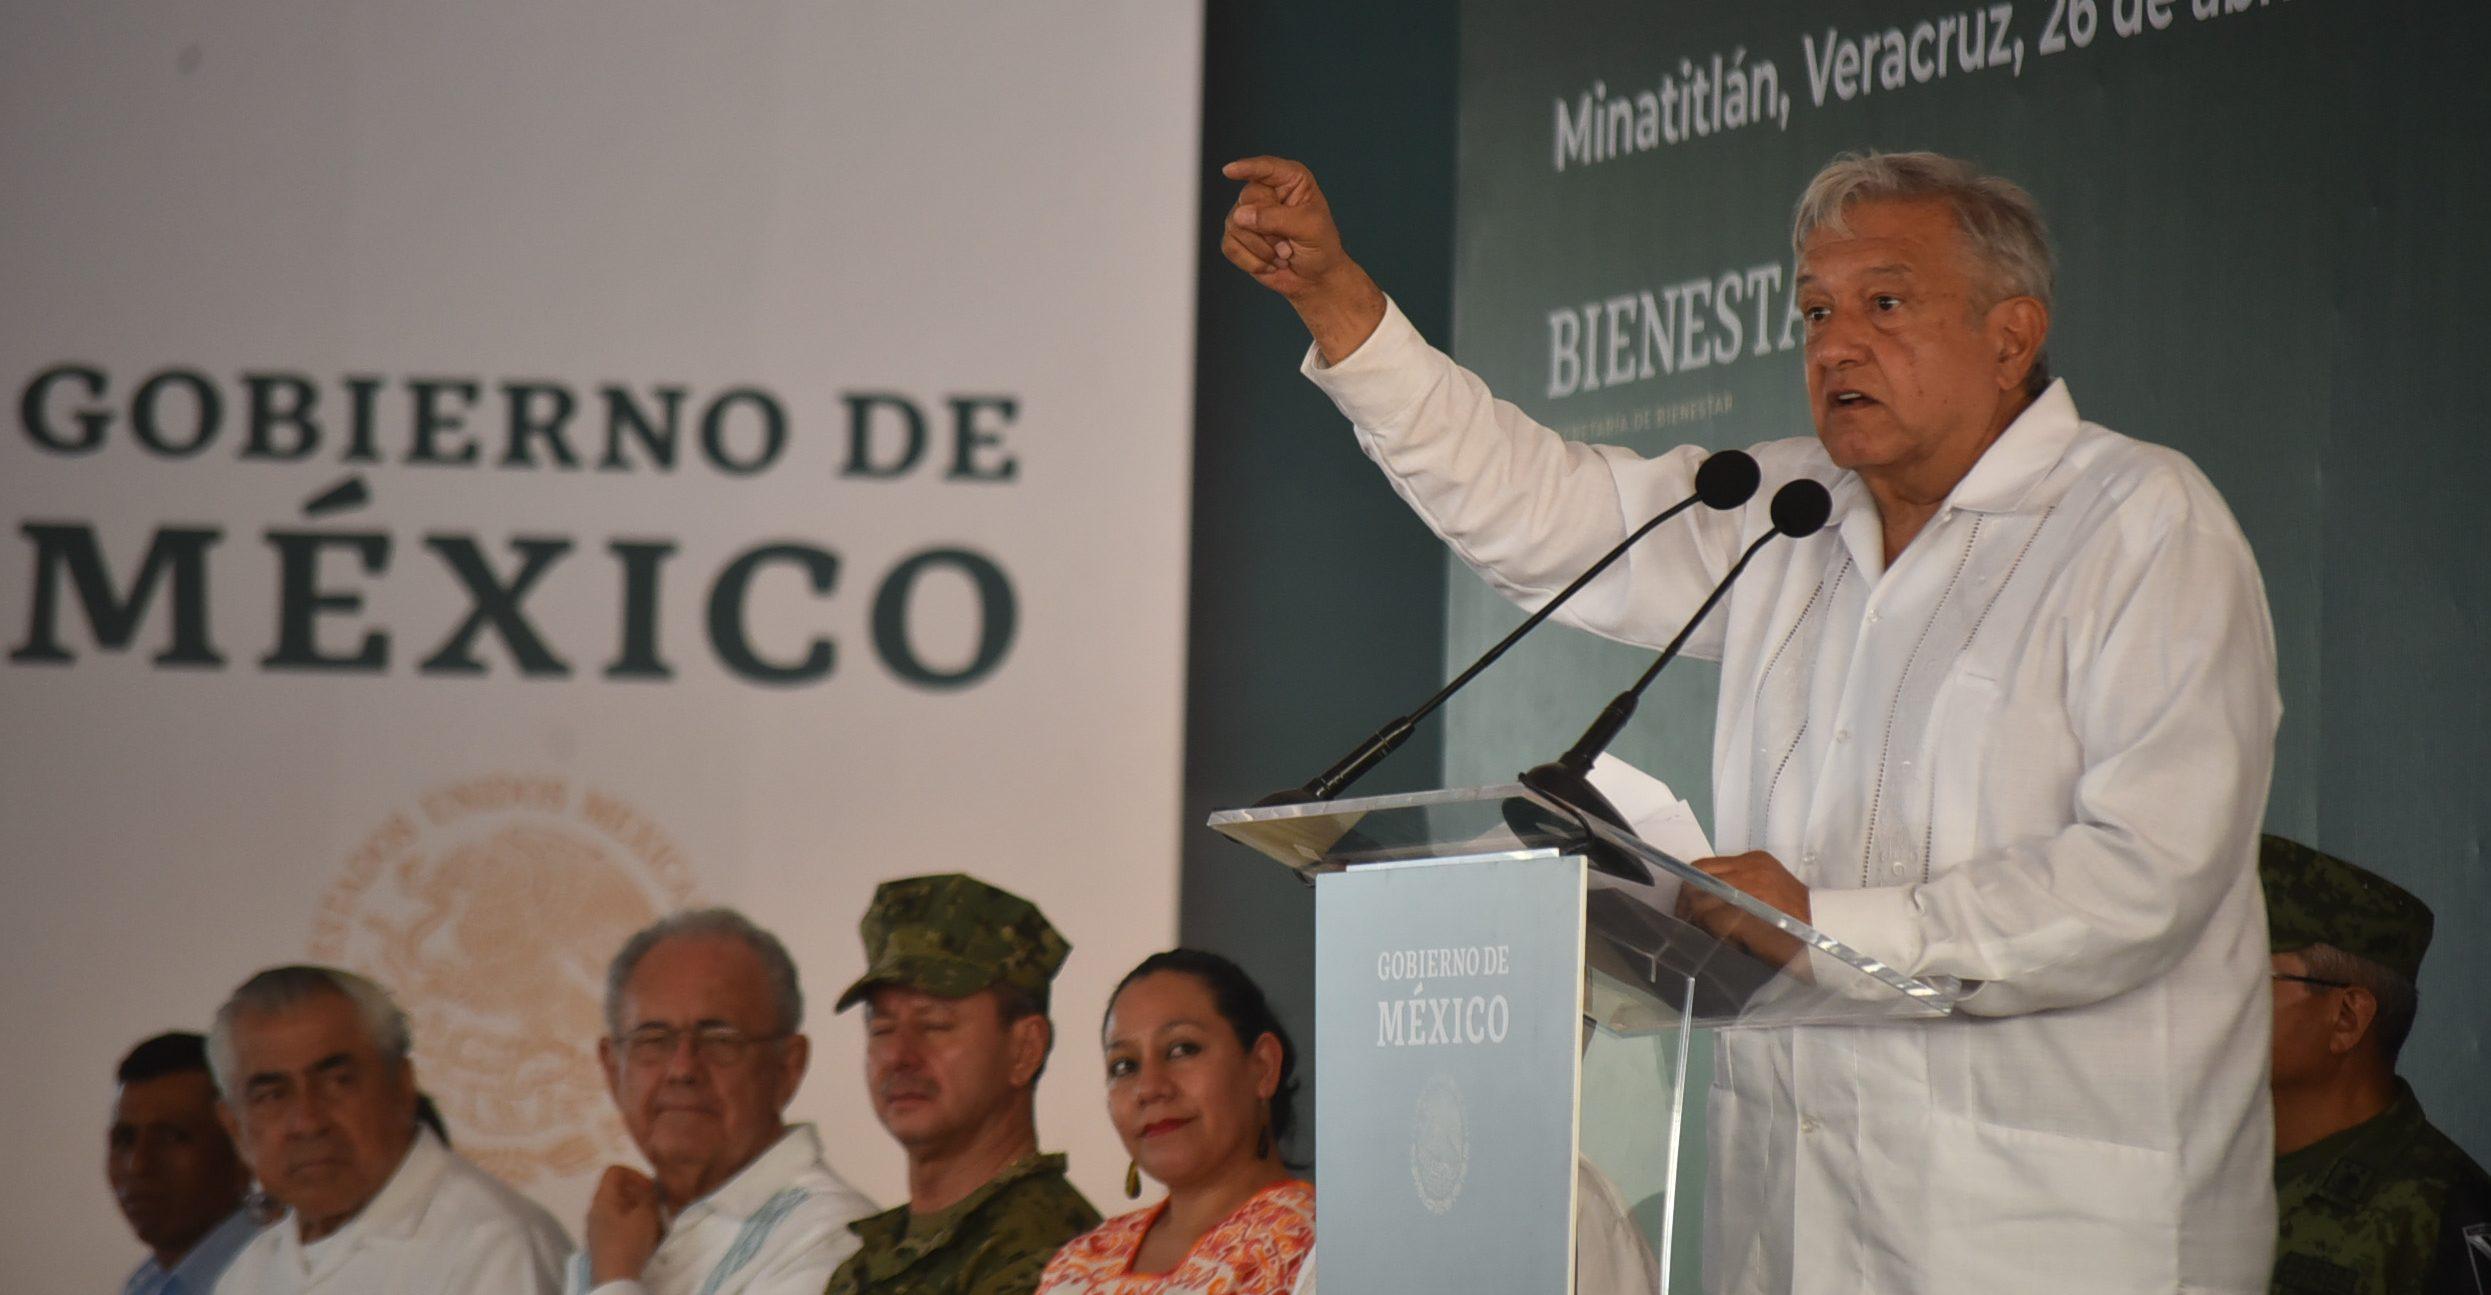 Casos violentos como el de Minatitlán son heredados de otros gobiernos, dice AMLO